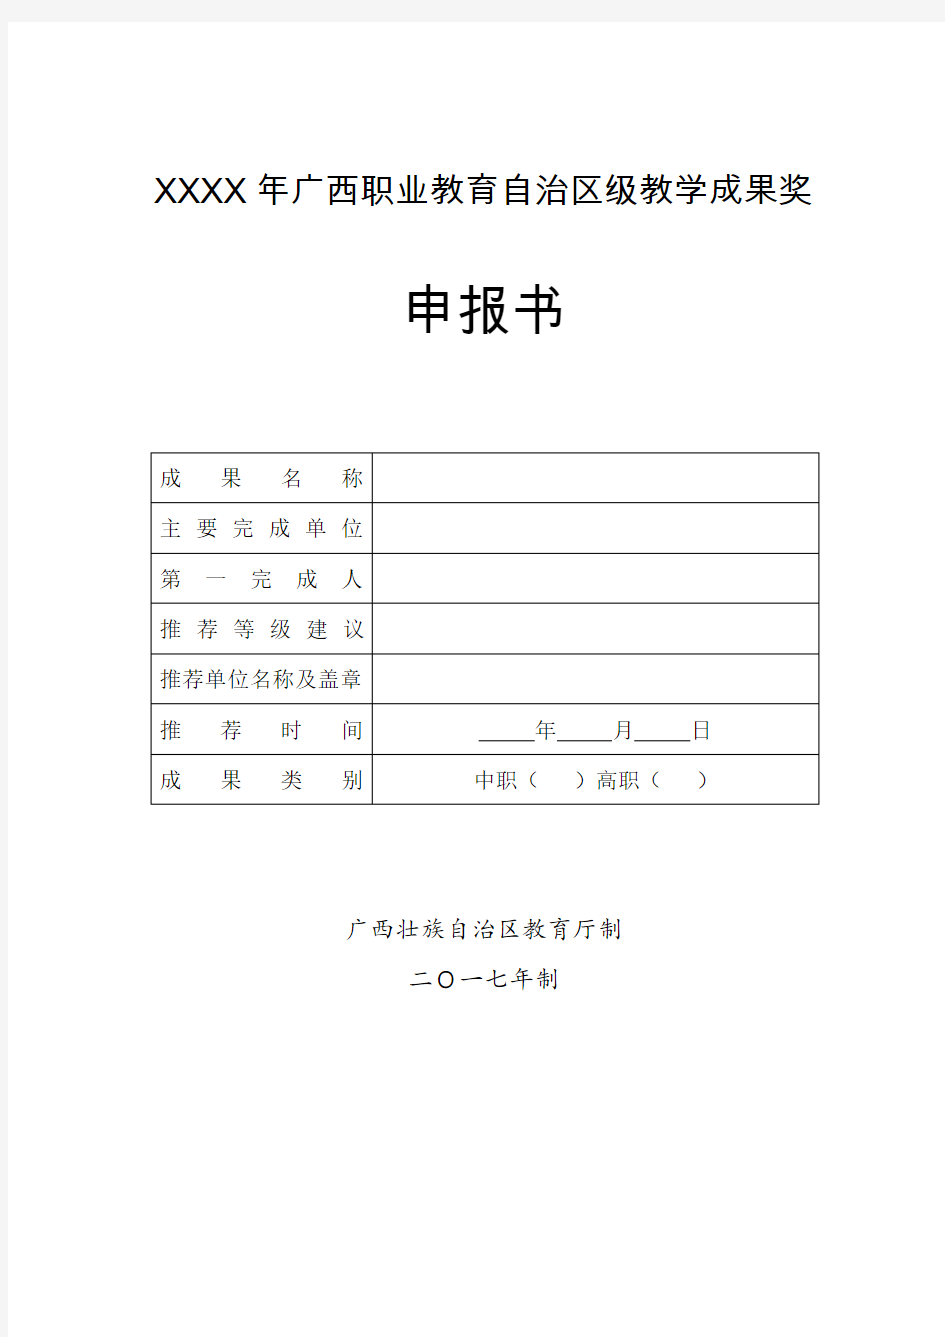 XX年广西职业教育自治区级教学成果奖申报书(空白)